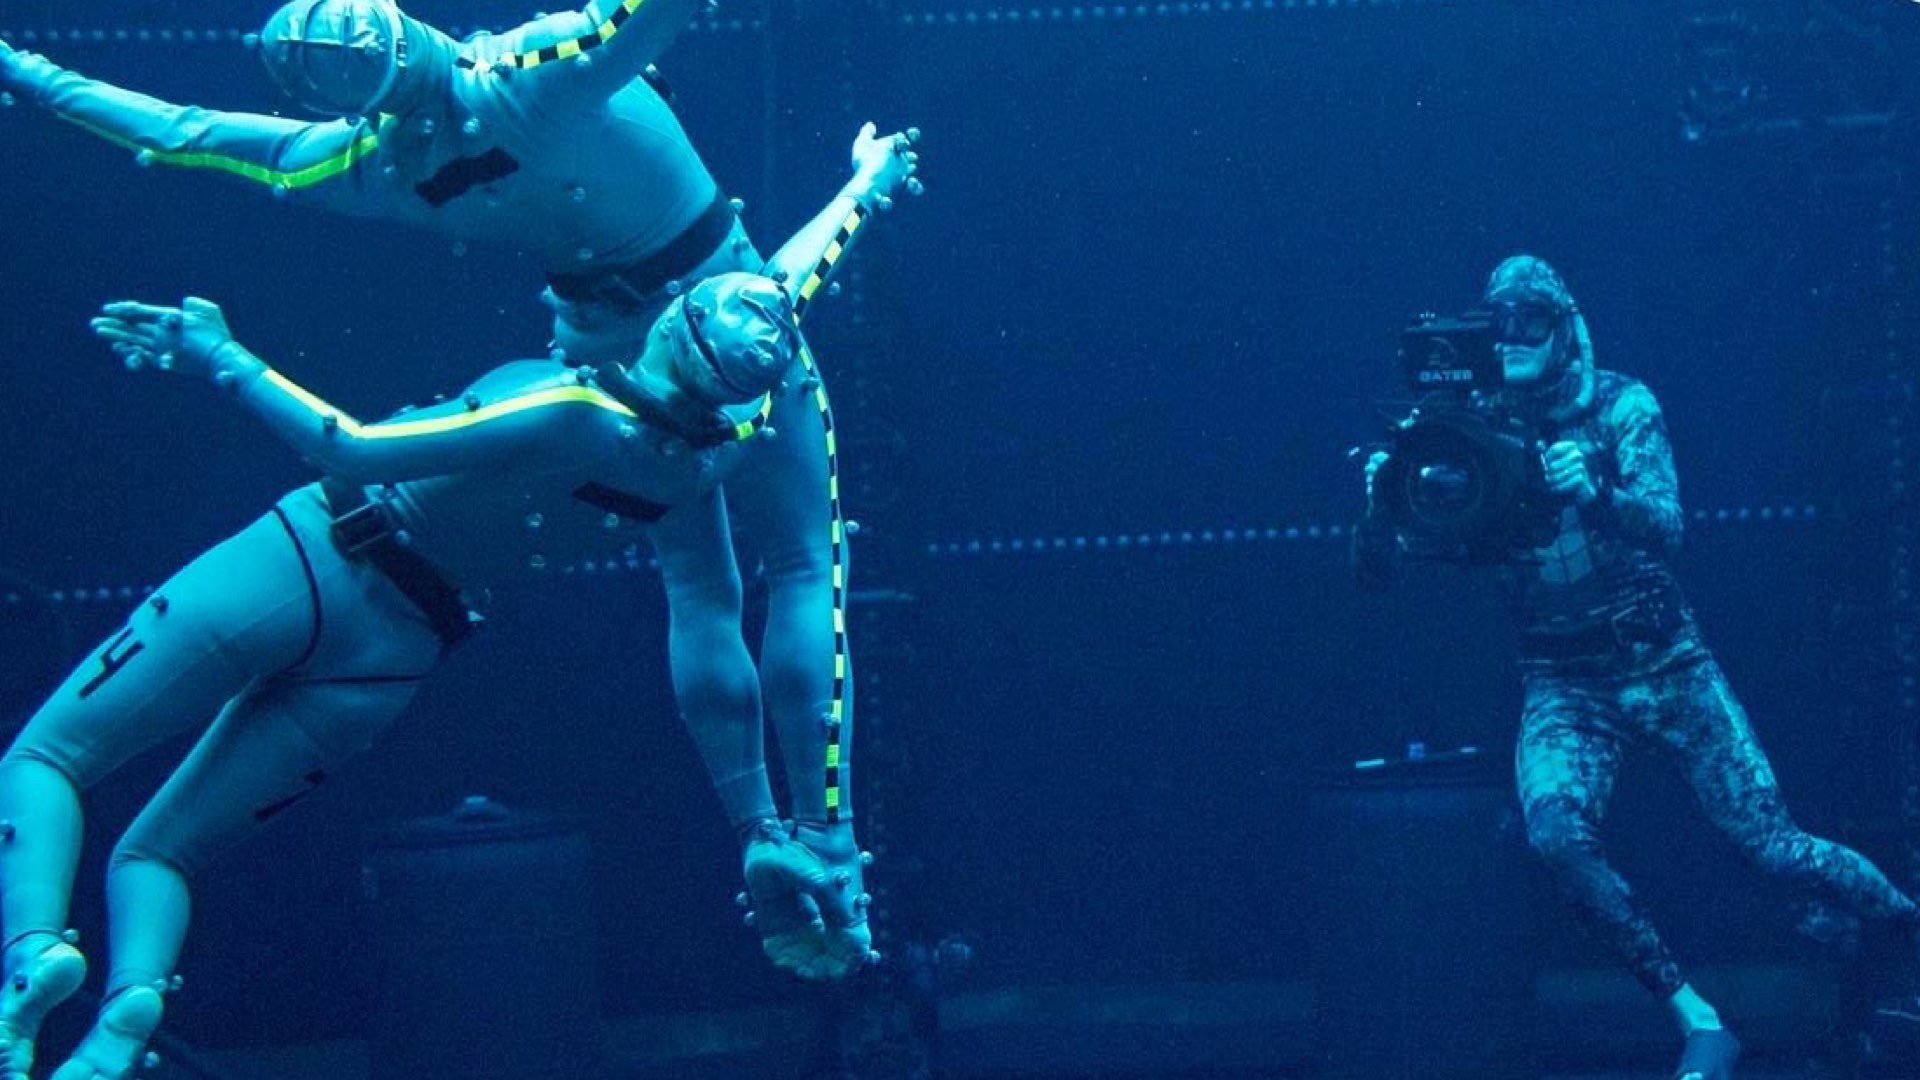 Cảnh thực hiện phim “Avatar: The Way of Water” bằng công nghệ kỹ xảo CGI trong bể nước phim trường 